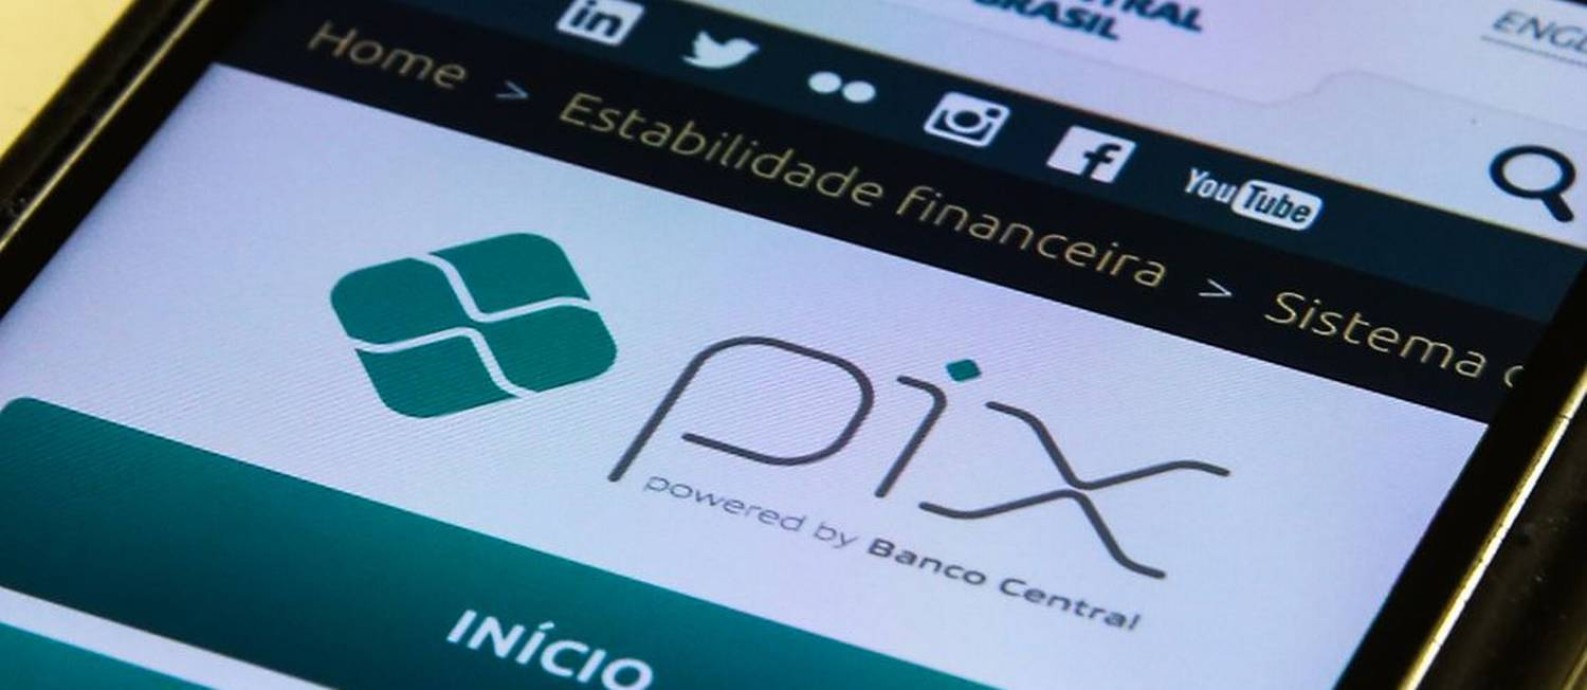 O Pix completou um ano em novembro e já é muito utilizado por pessoas e empresas Foto: Marcello Casal Jr / Agência Brasil